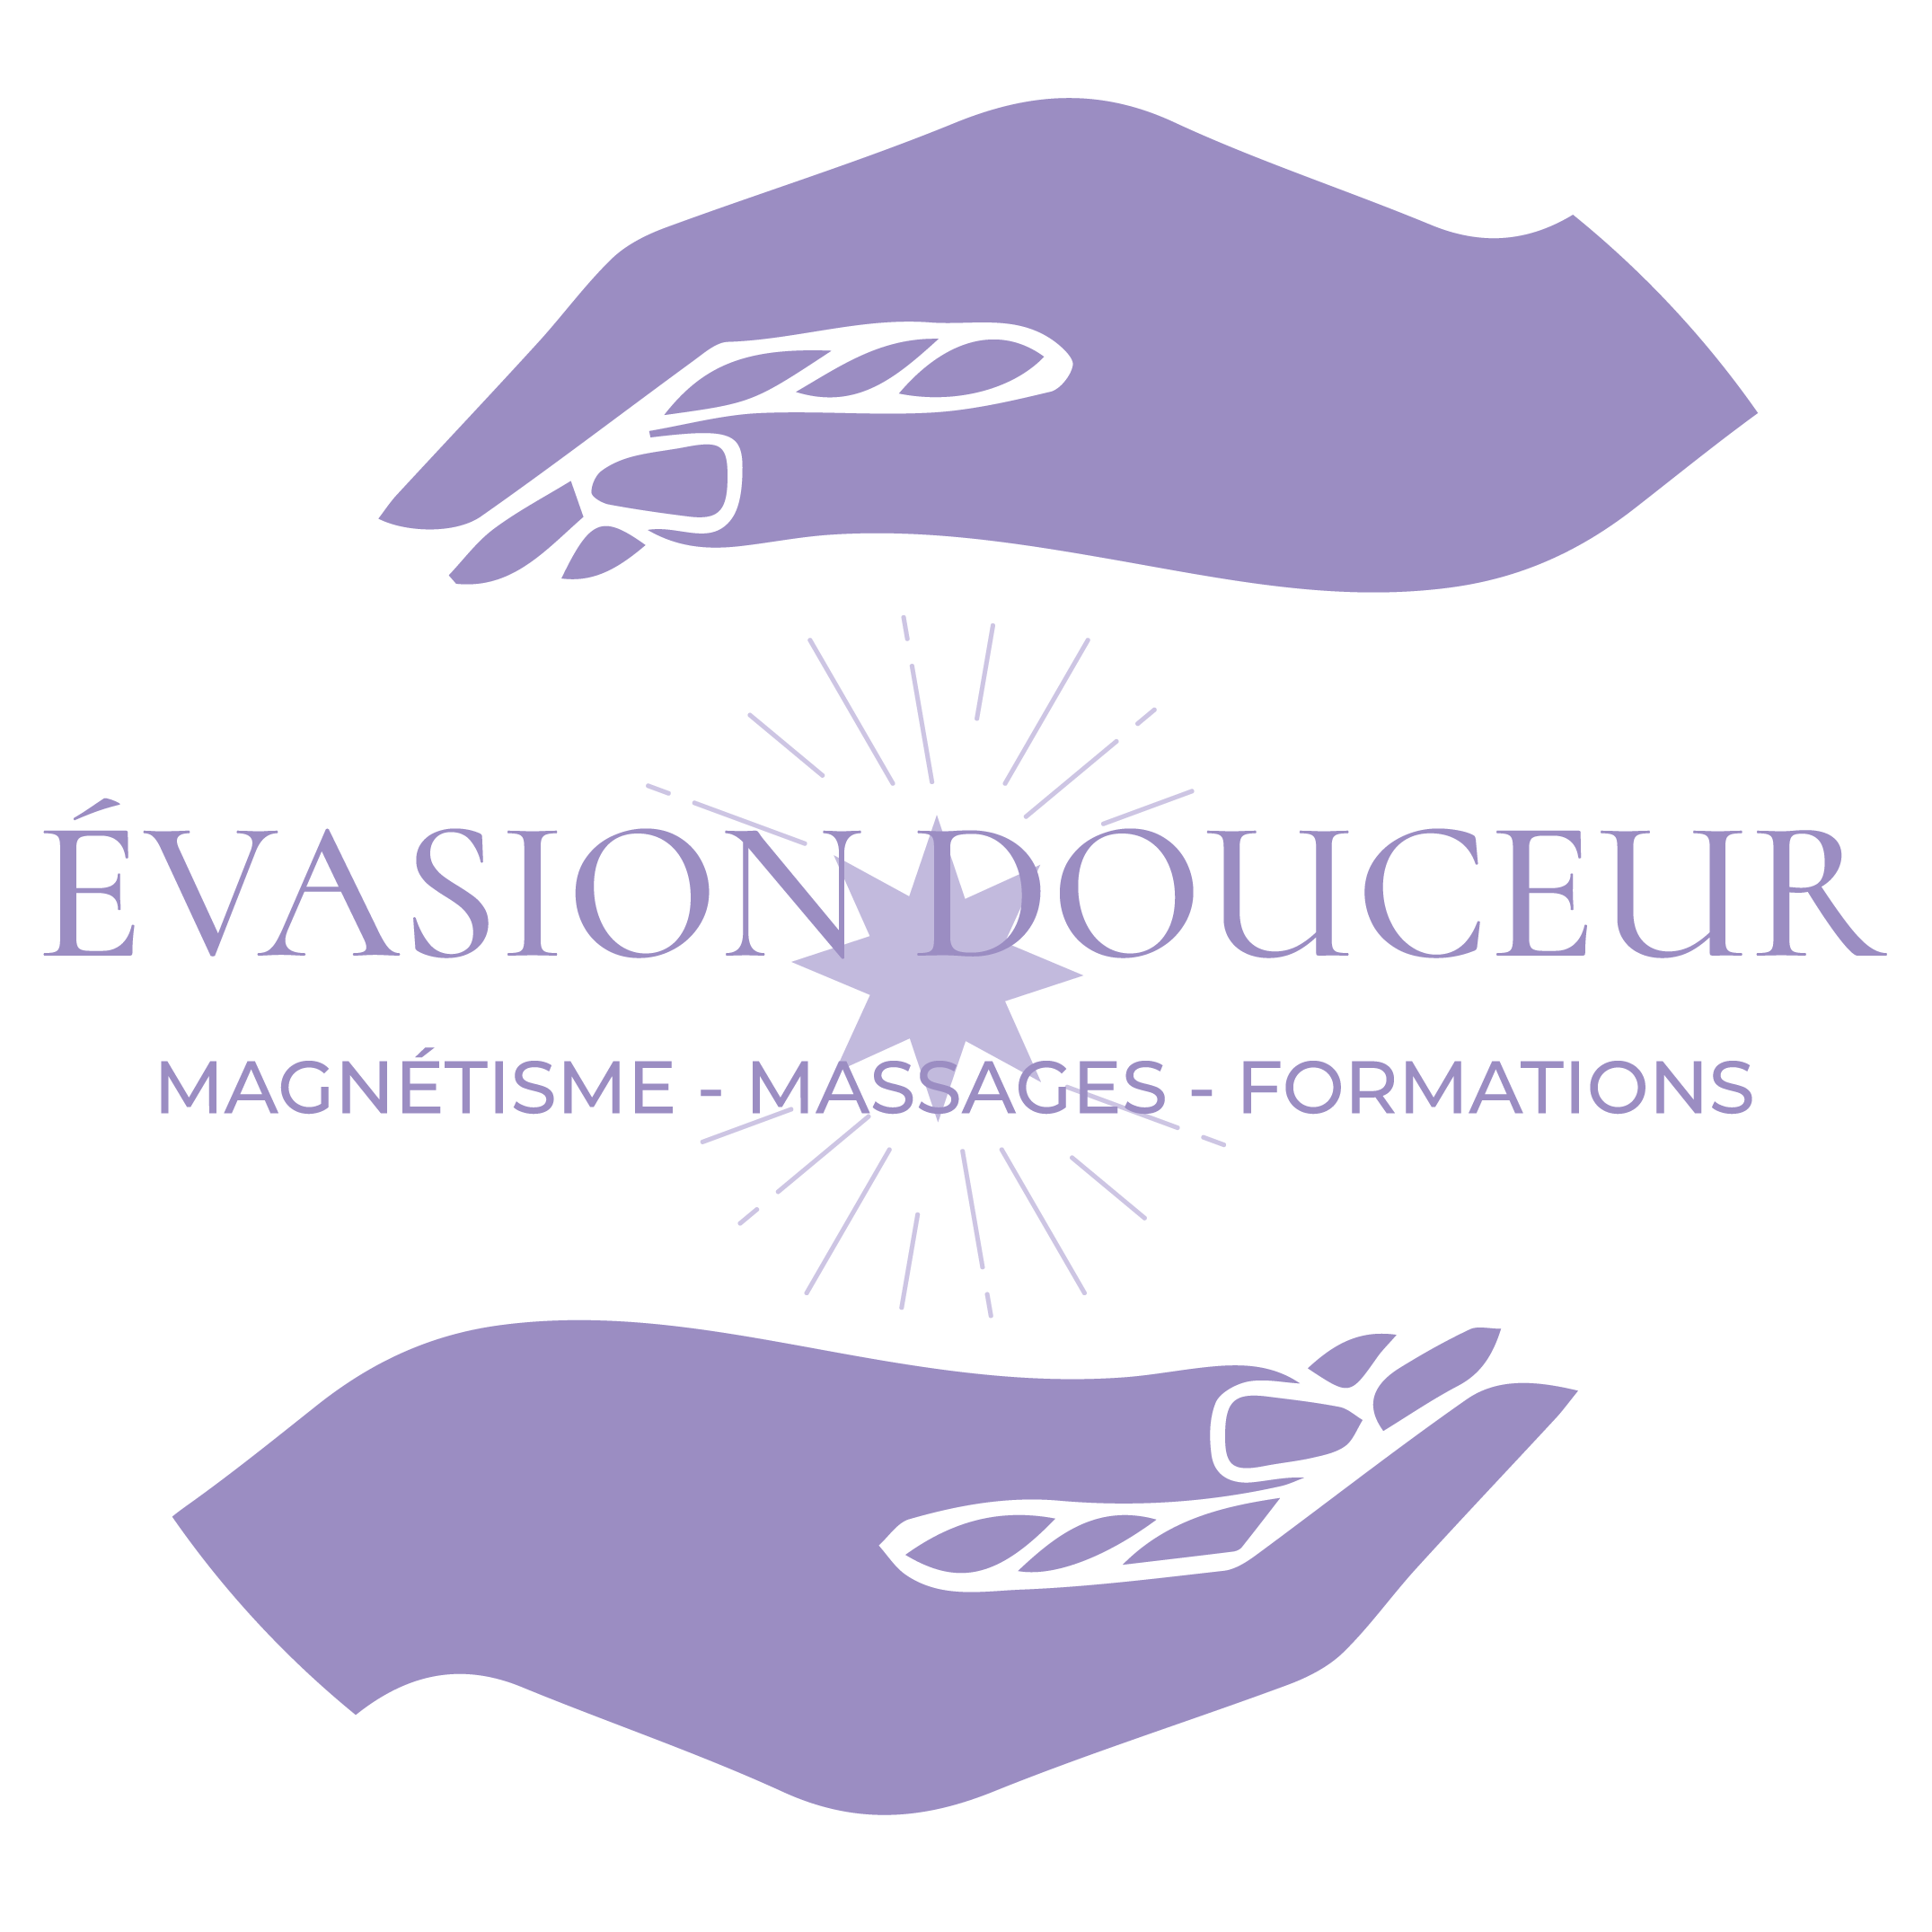 Evasion Douceur